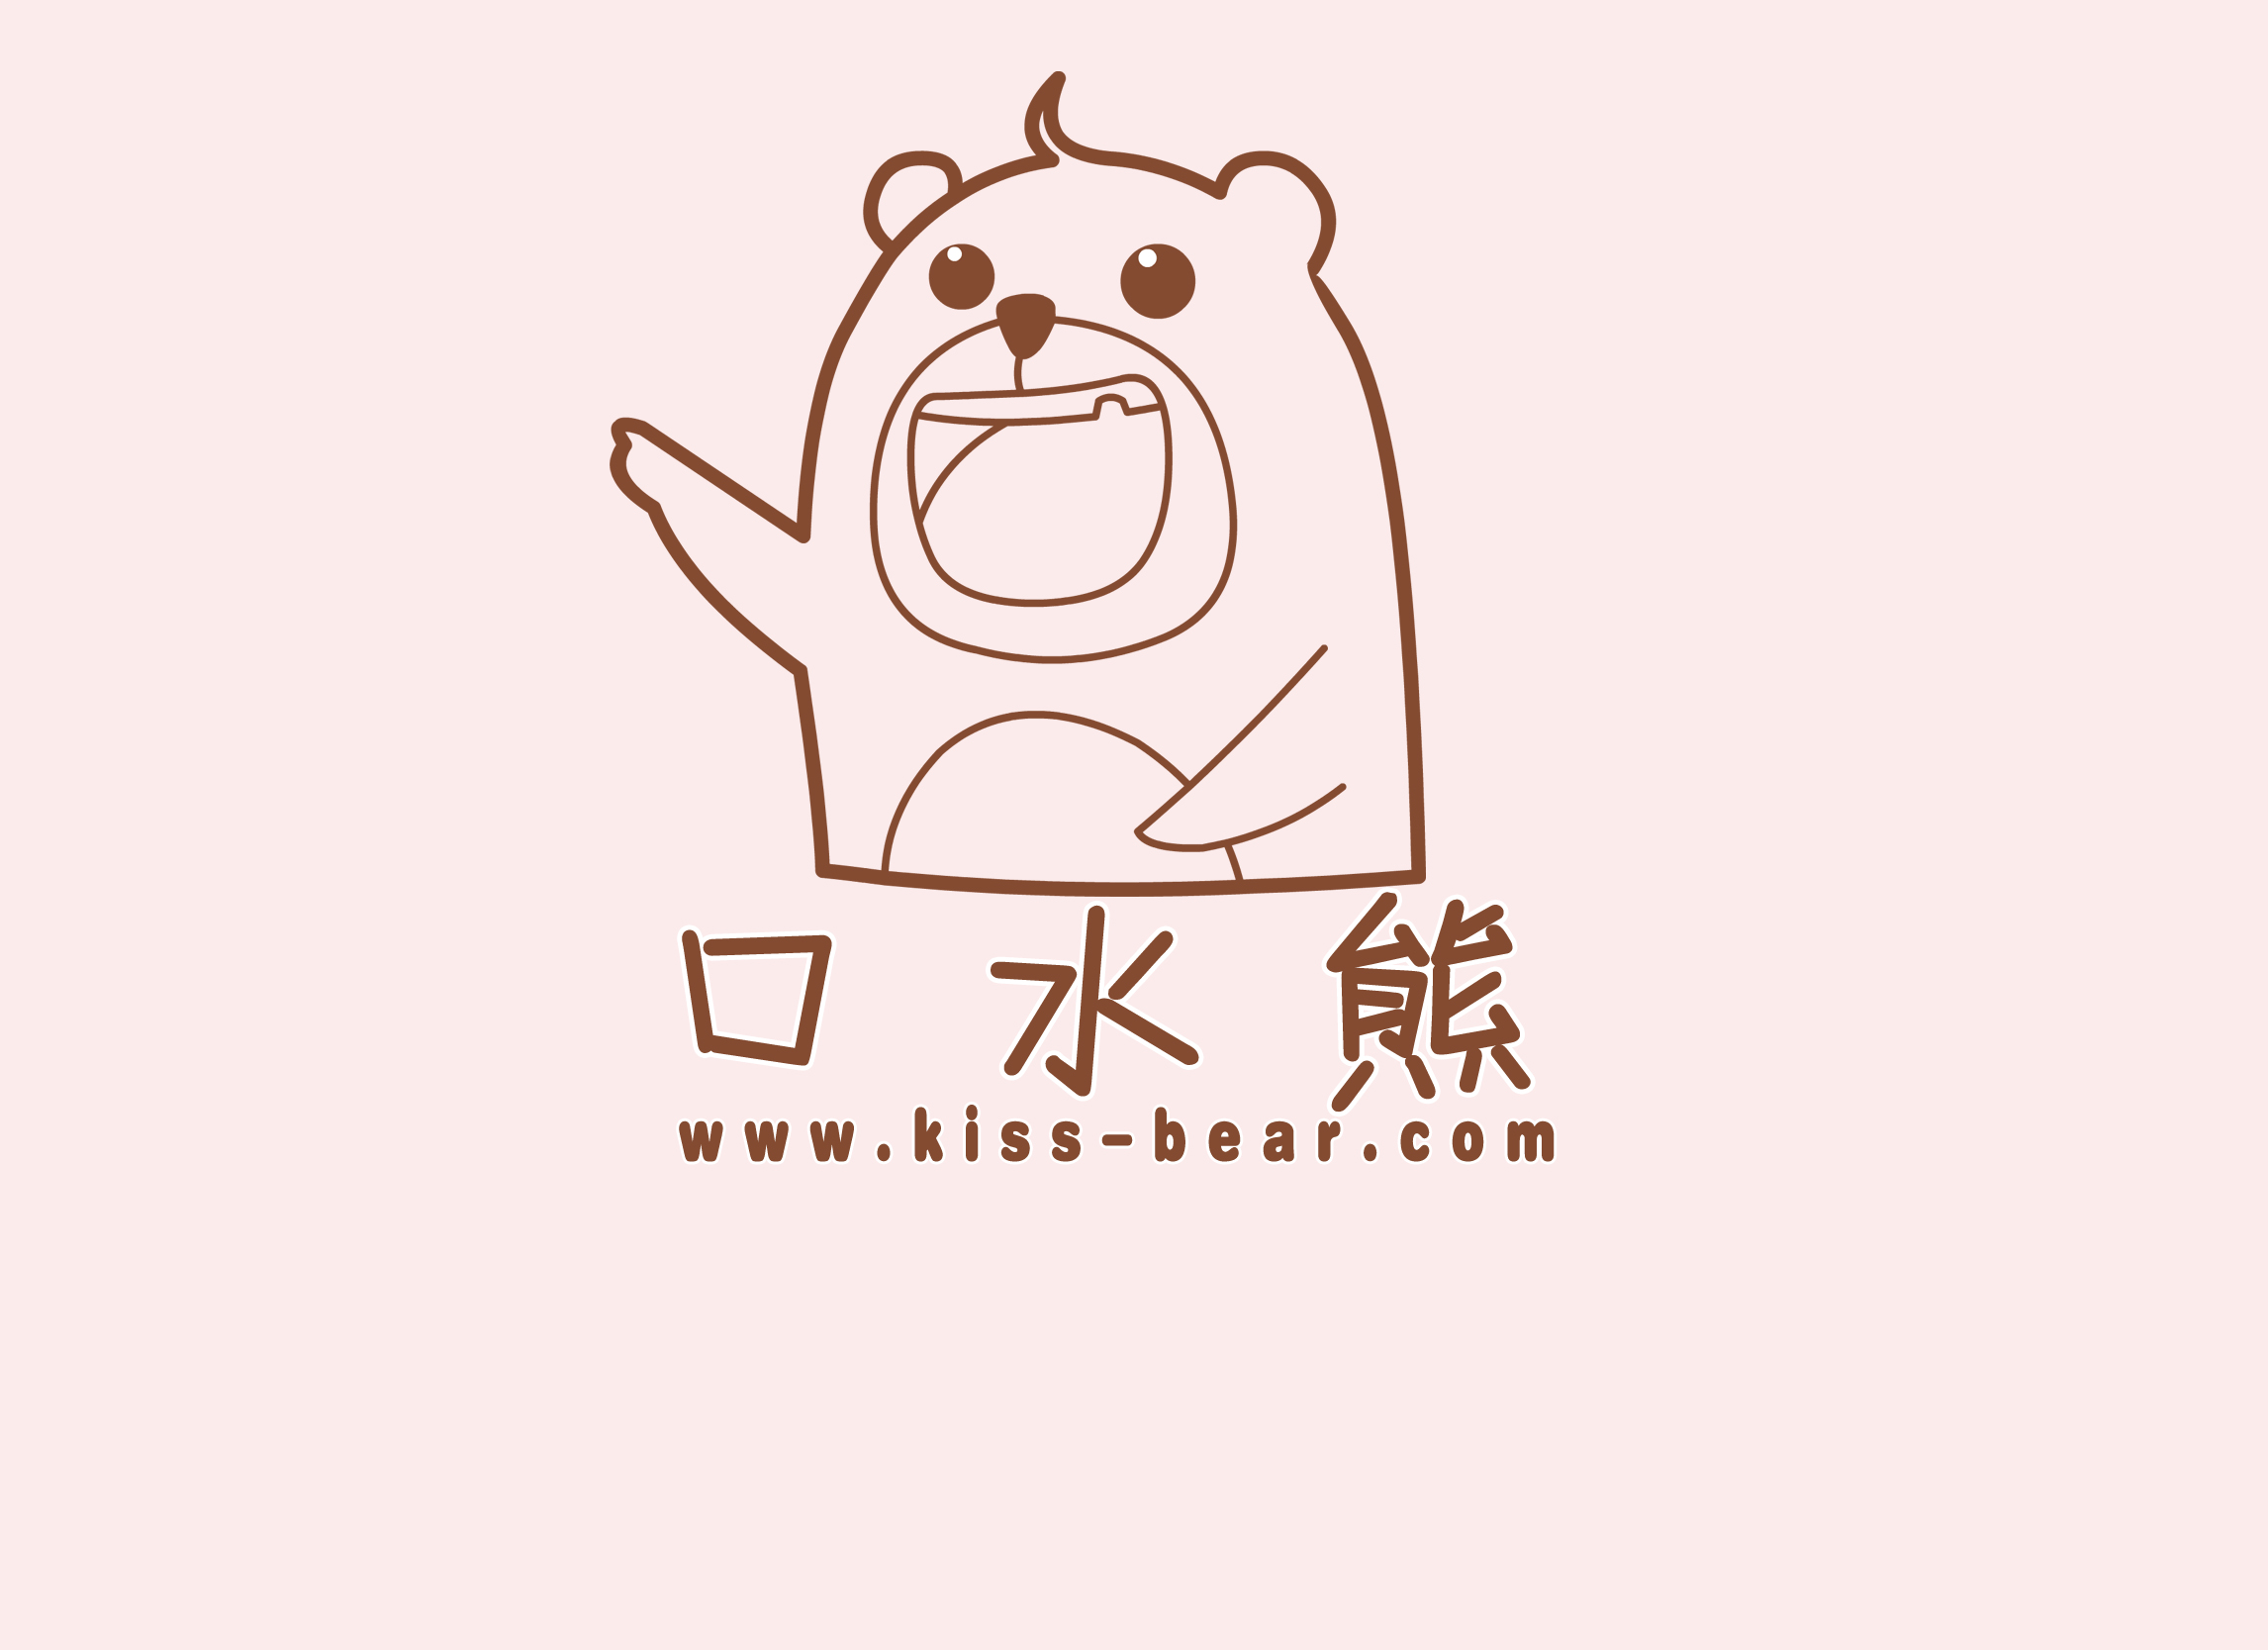 设计小熊卡通形象logo-动漫设计-猪八戒网